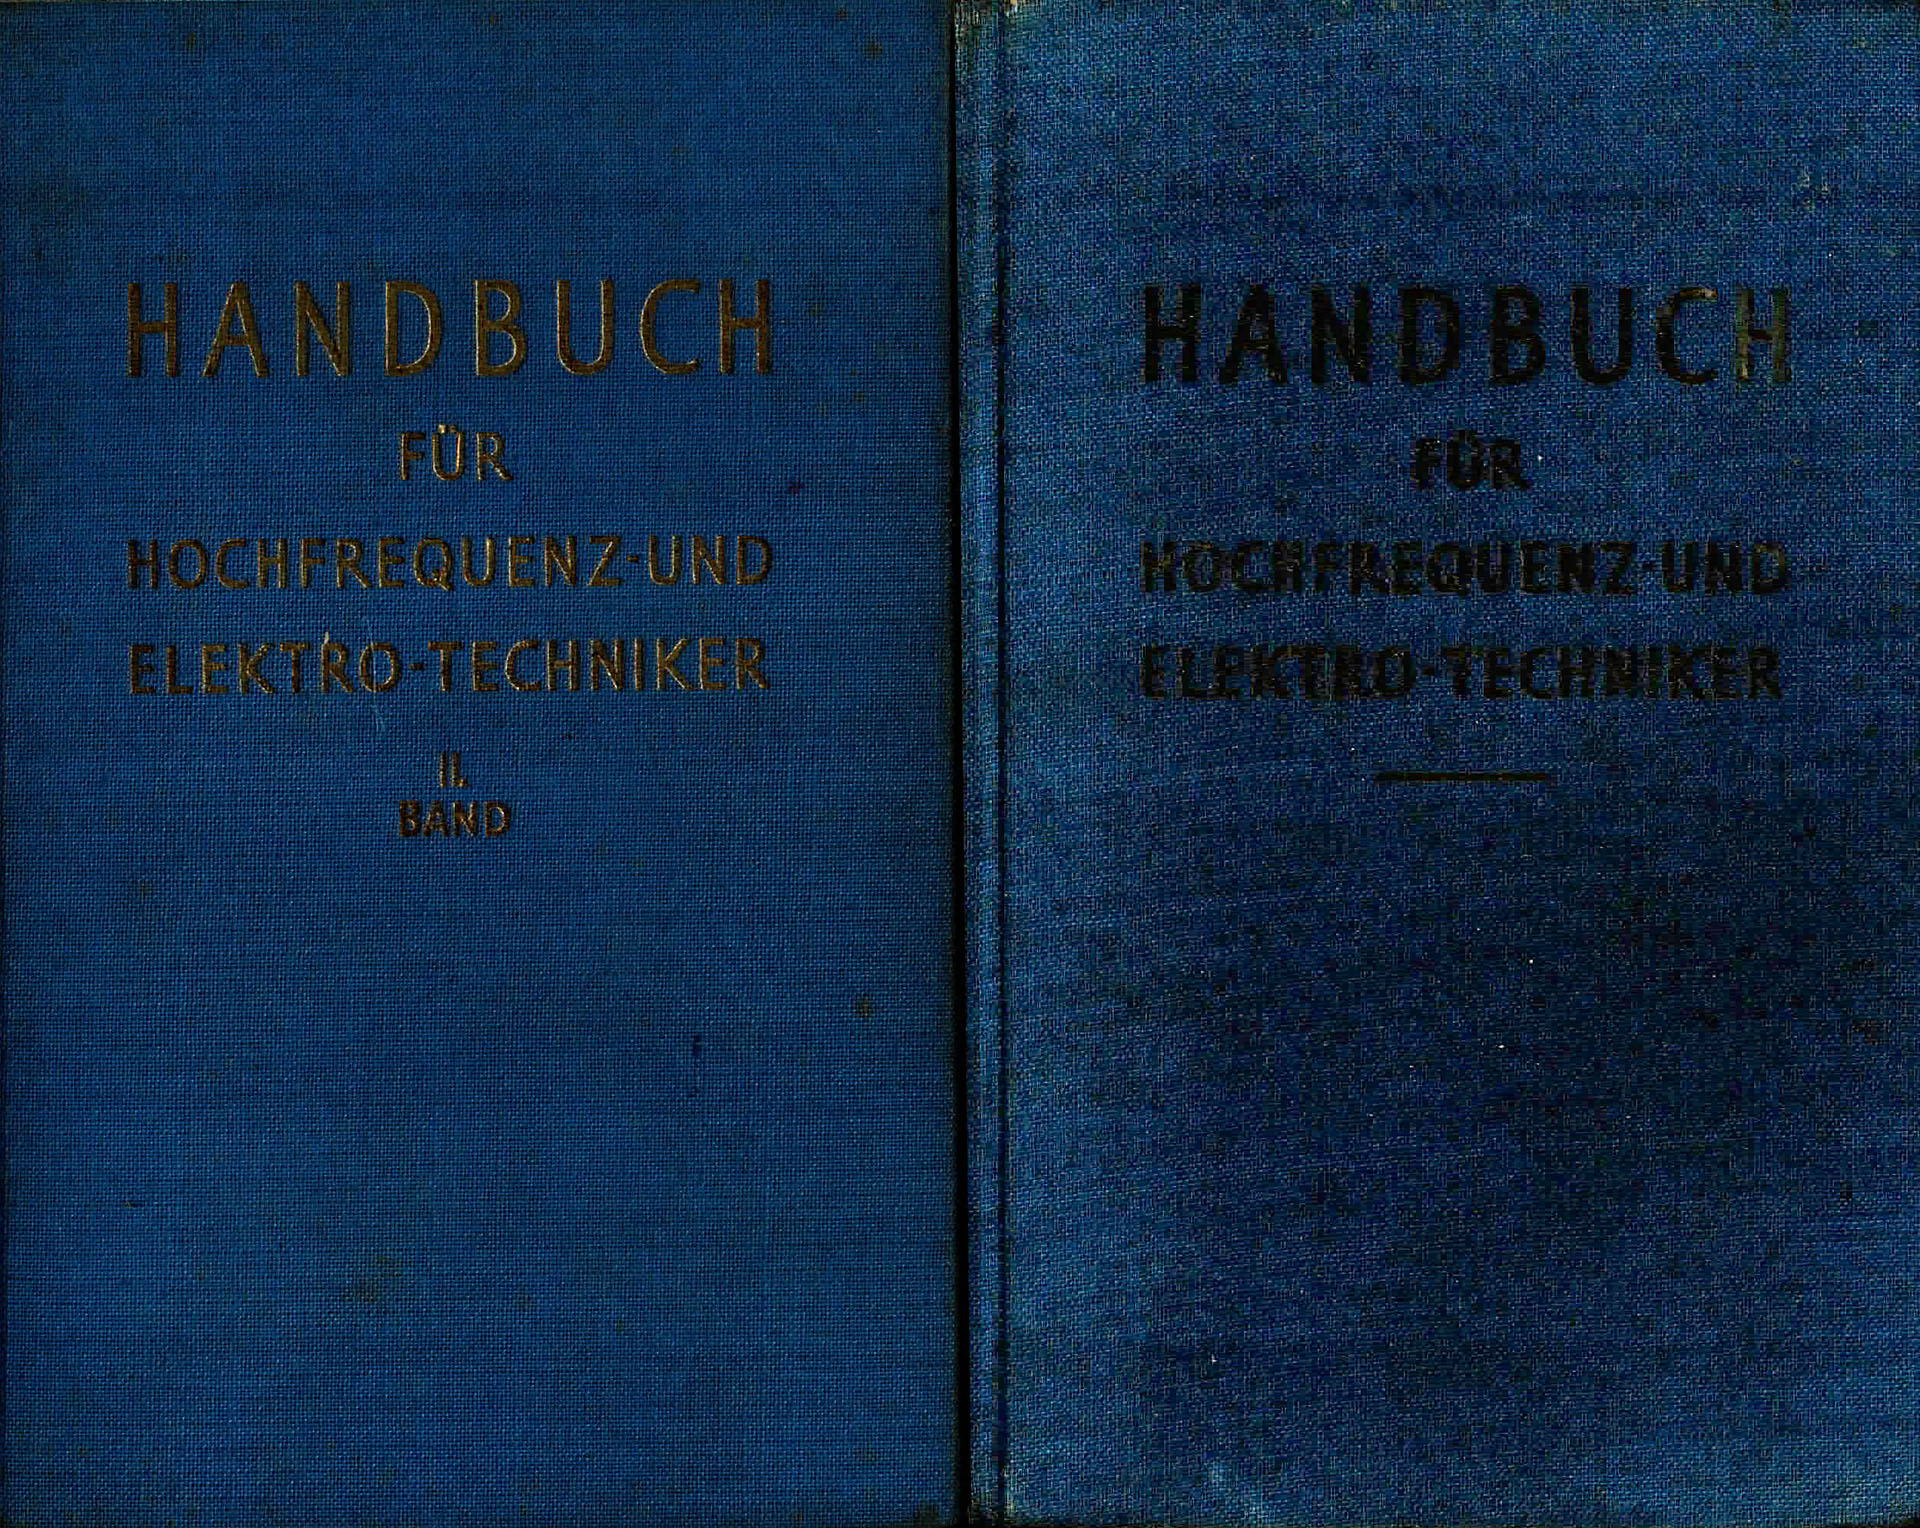 Handbuch für den Hochfrequenz- und Elektrotechniker, Bände I. und II. - Rint, Curt